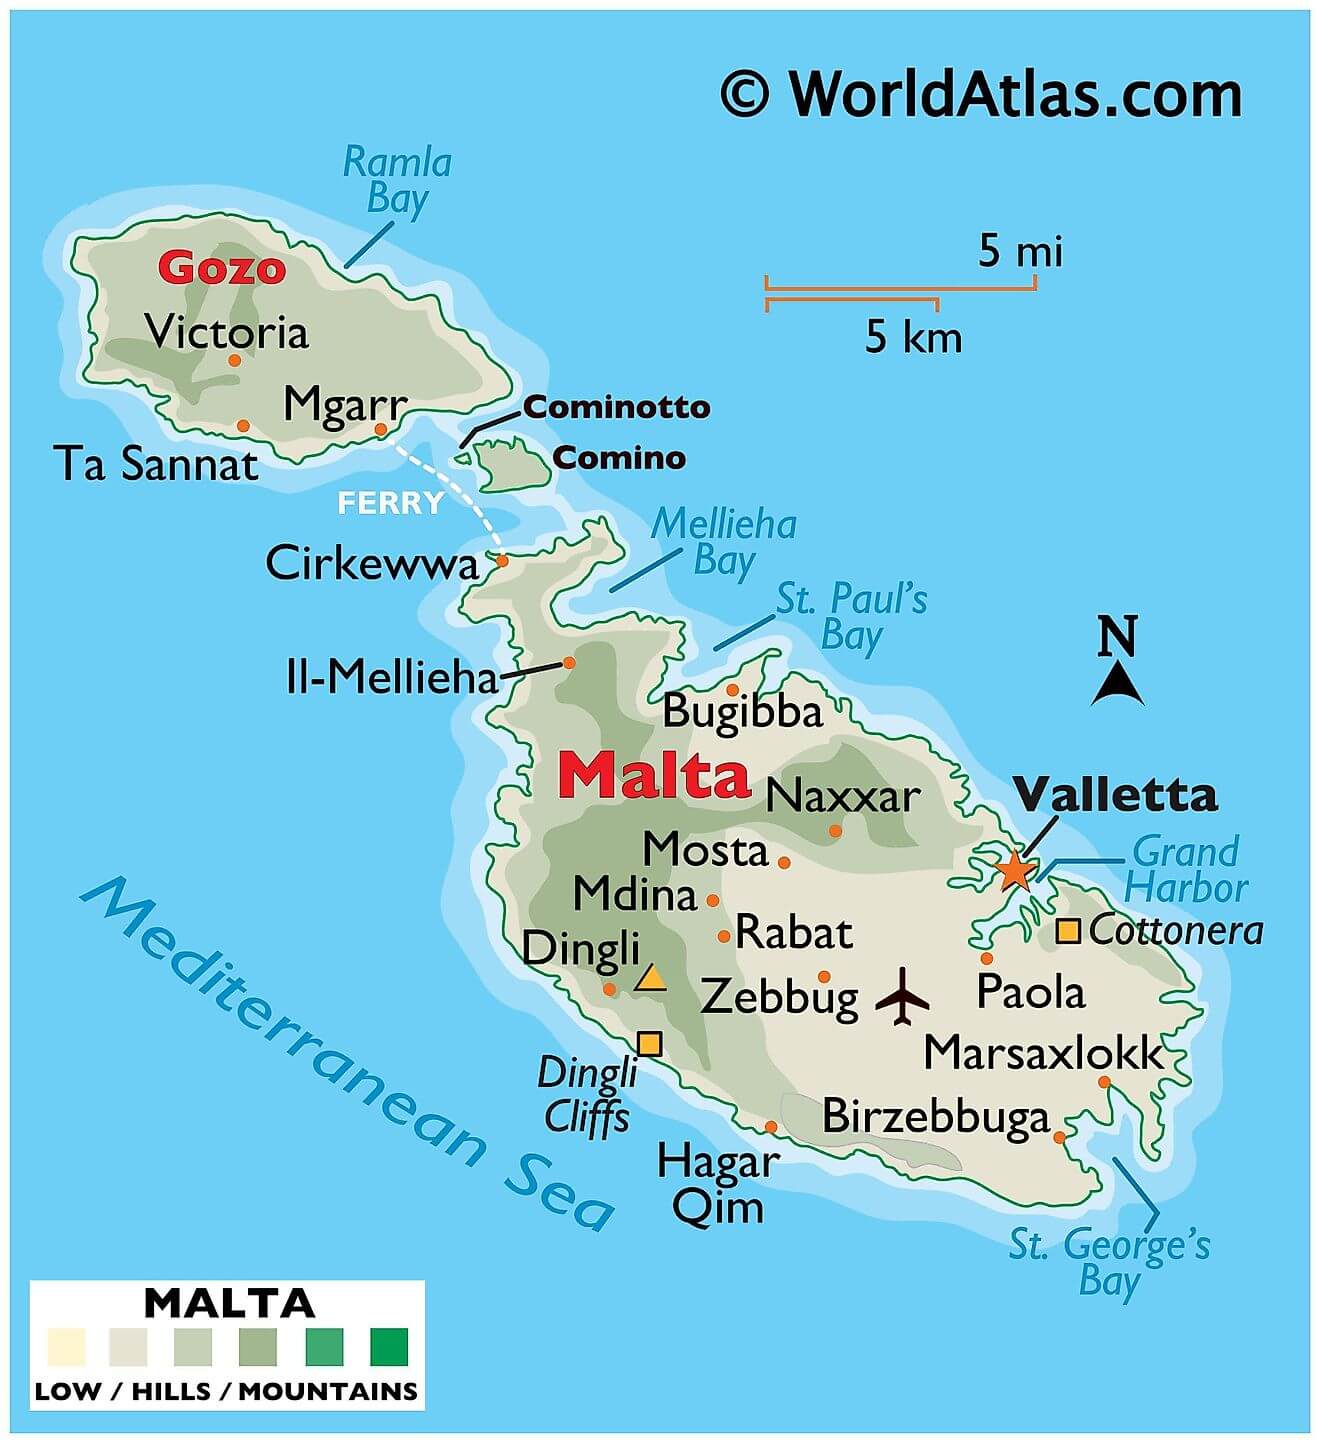 Bản đồ vật lý của Malta